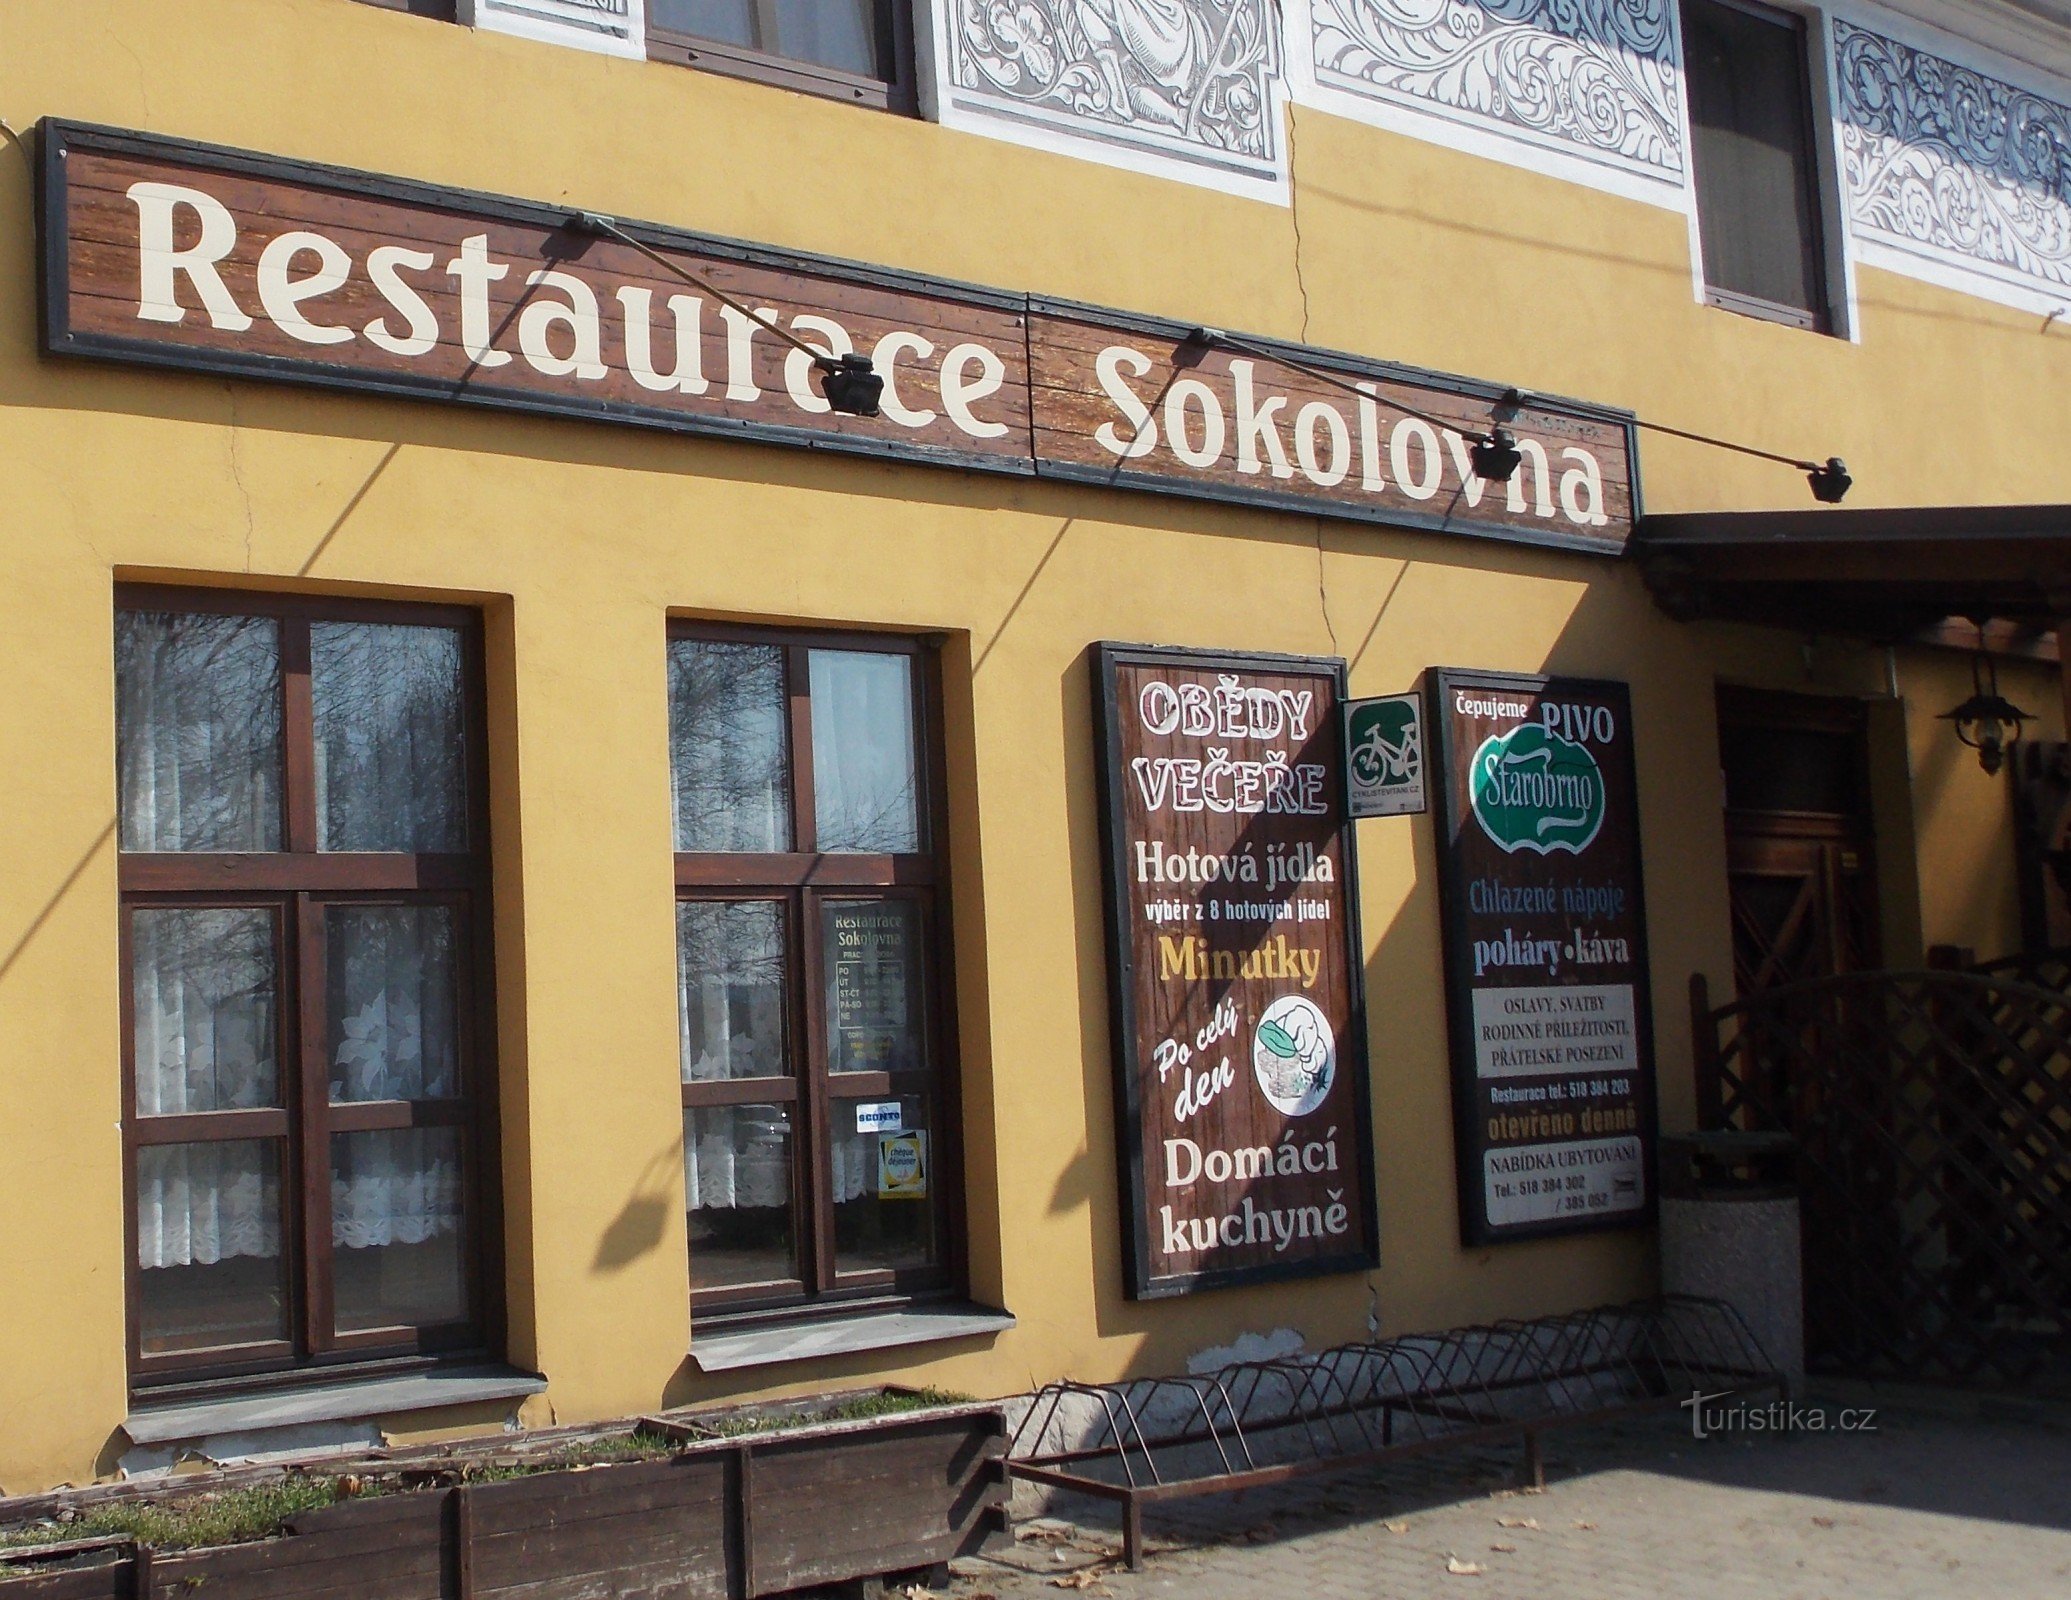 Restavracija in prenočišče Sokolovna v Bzencu